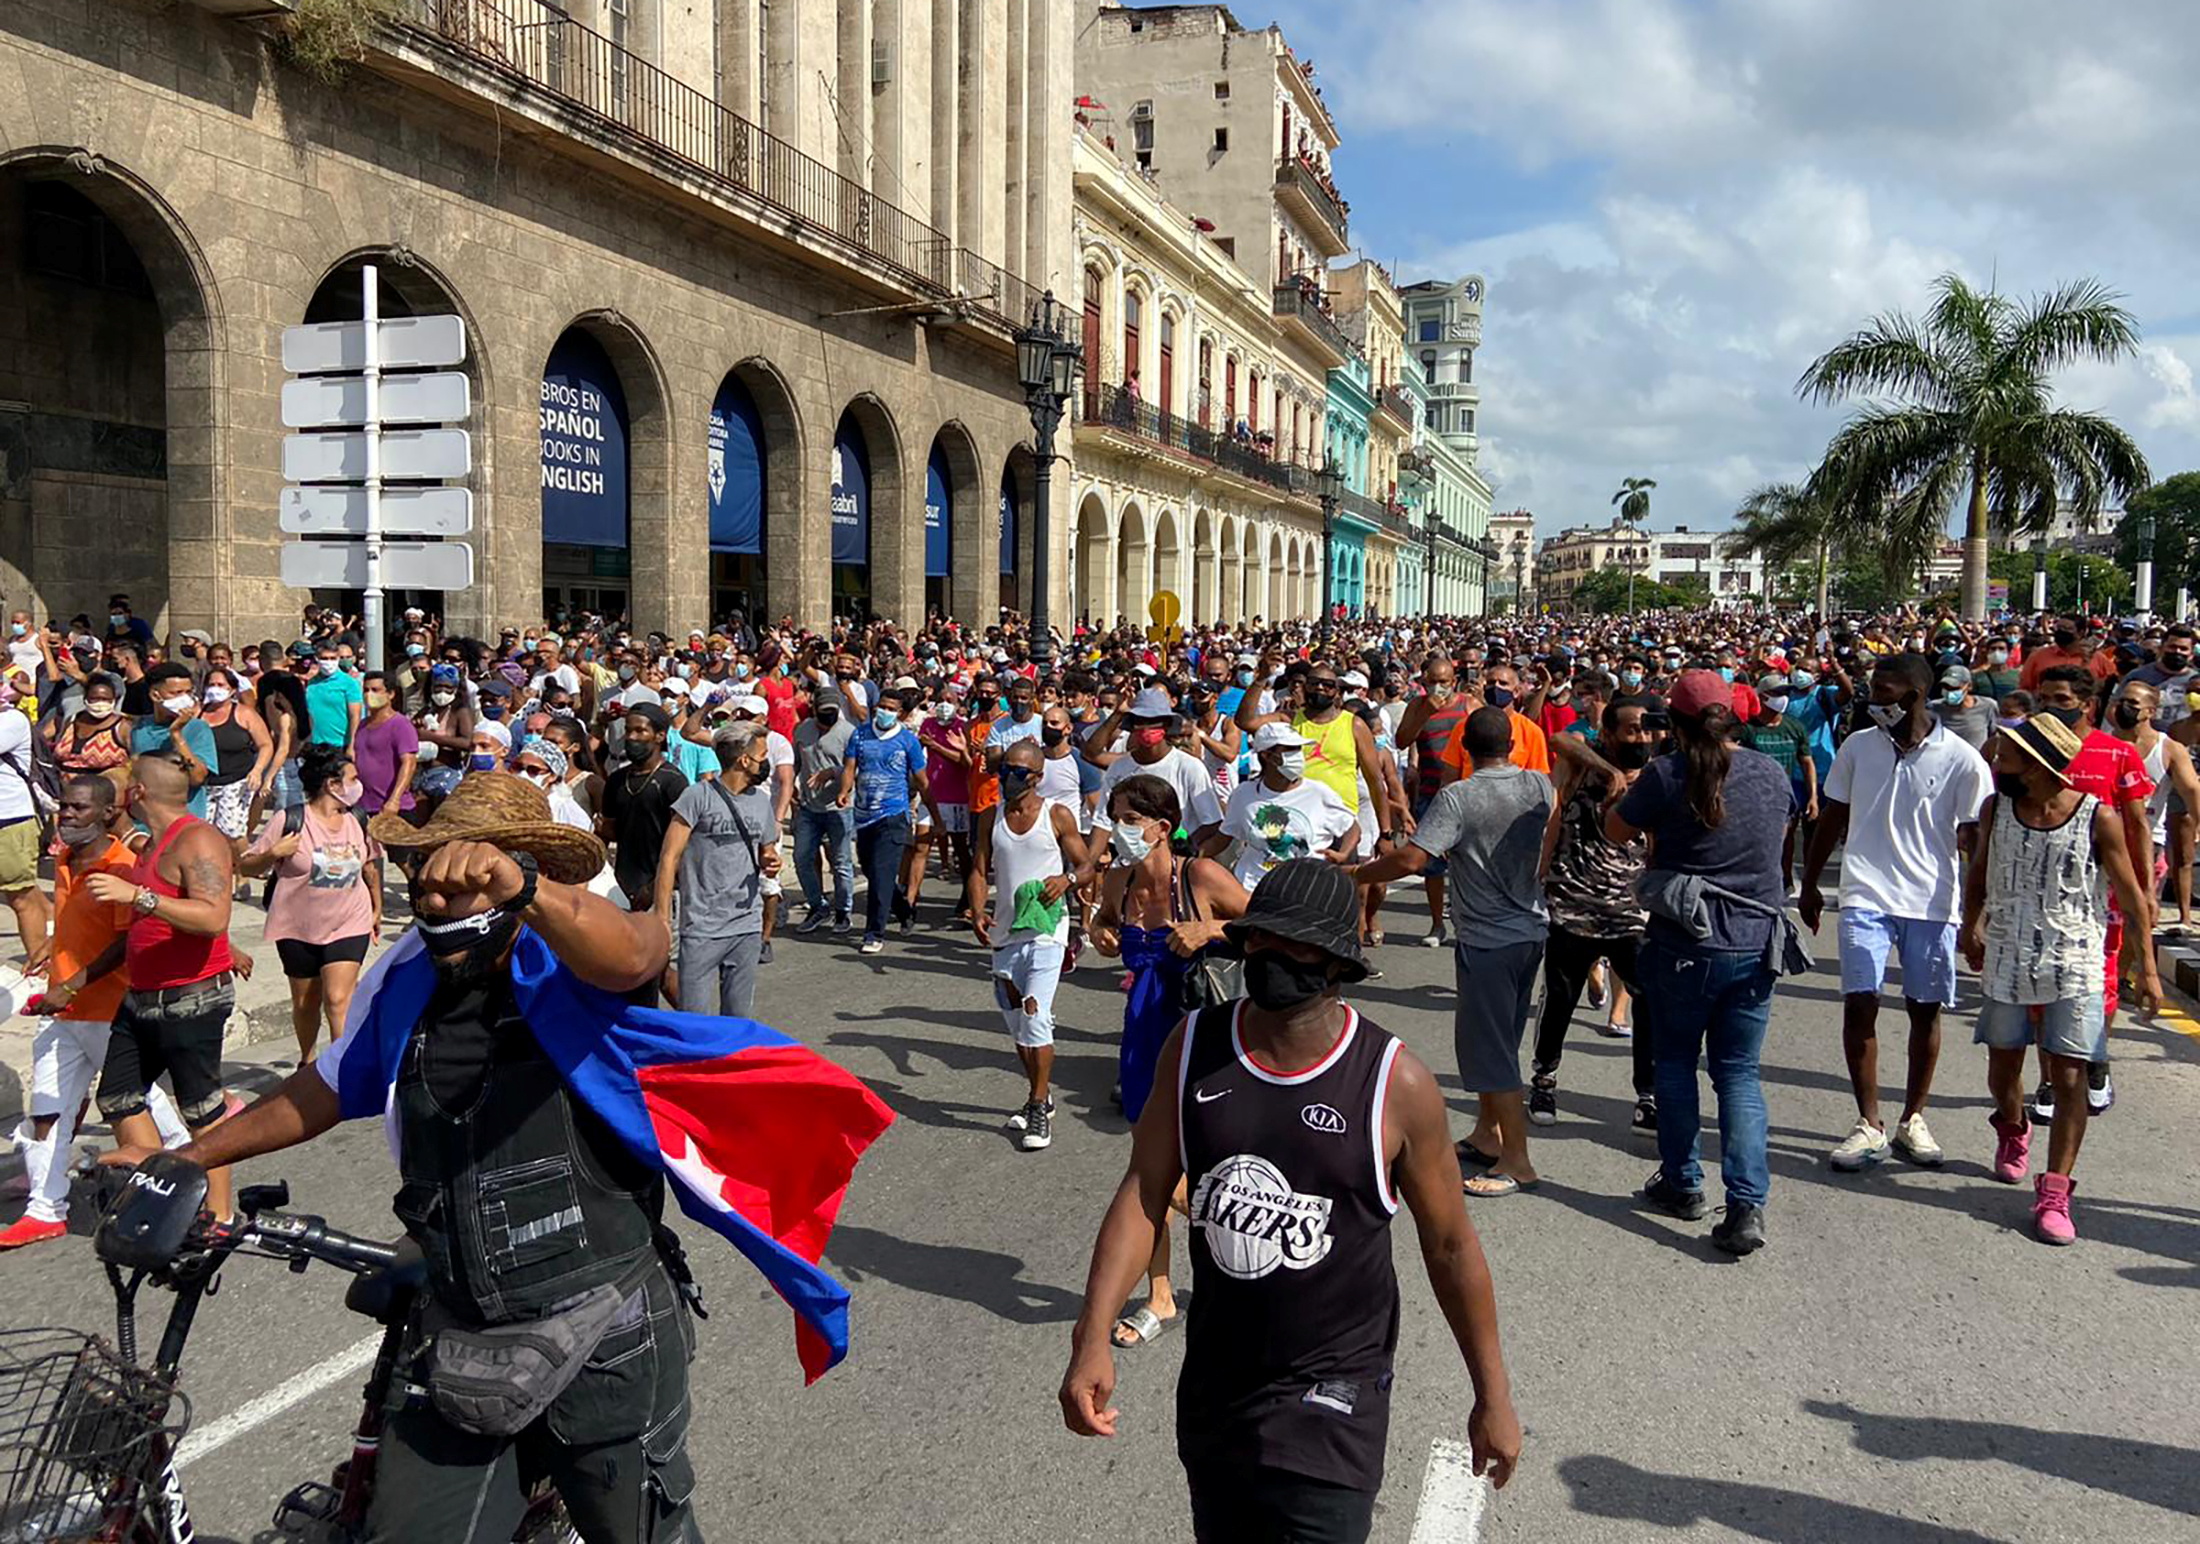 Se registra una masiva protesta en Cuba contra el gobierno de Miguel Díaz-Canel